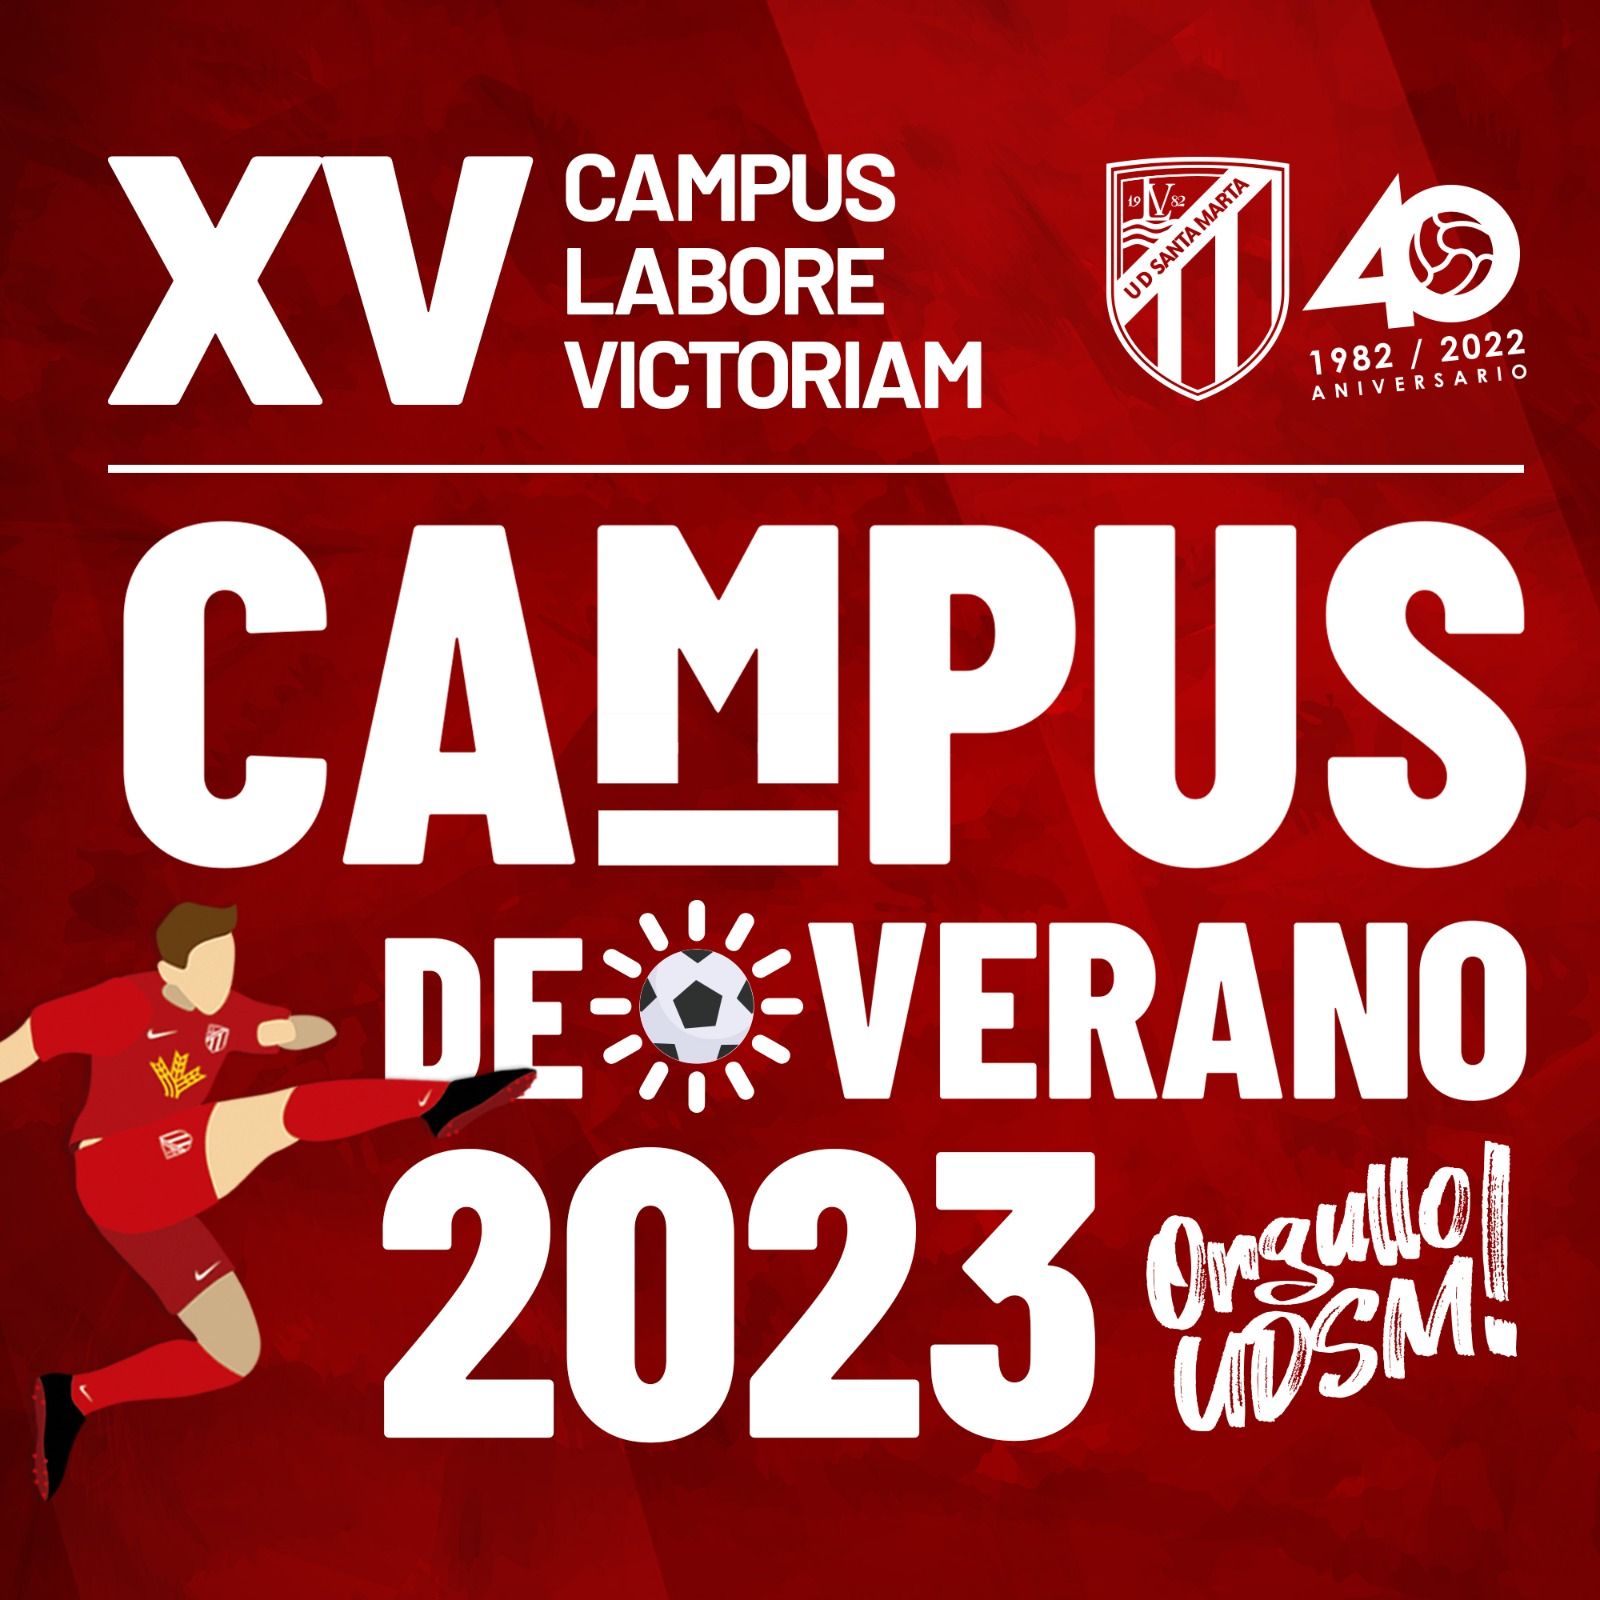 Campus XV Labore Victoriam